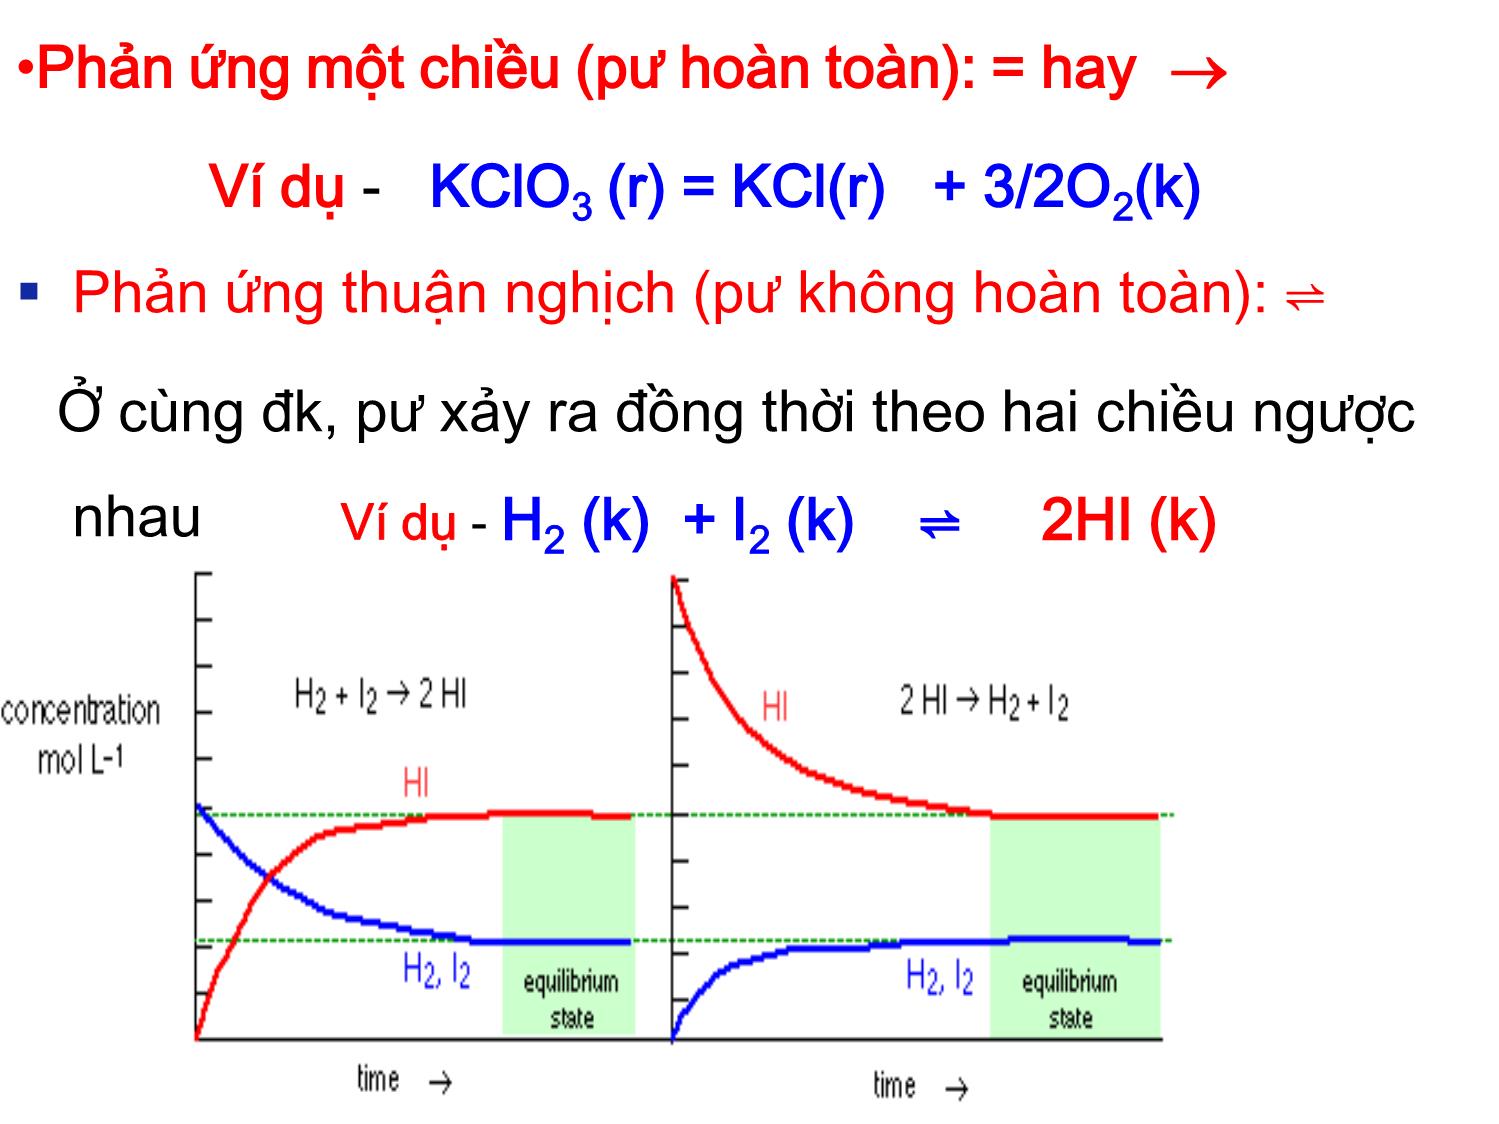 Bài giảng Hóa đại cương: Cân bằng hóa học - Nguyễn Minh Kha trang 2